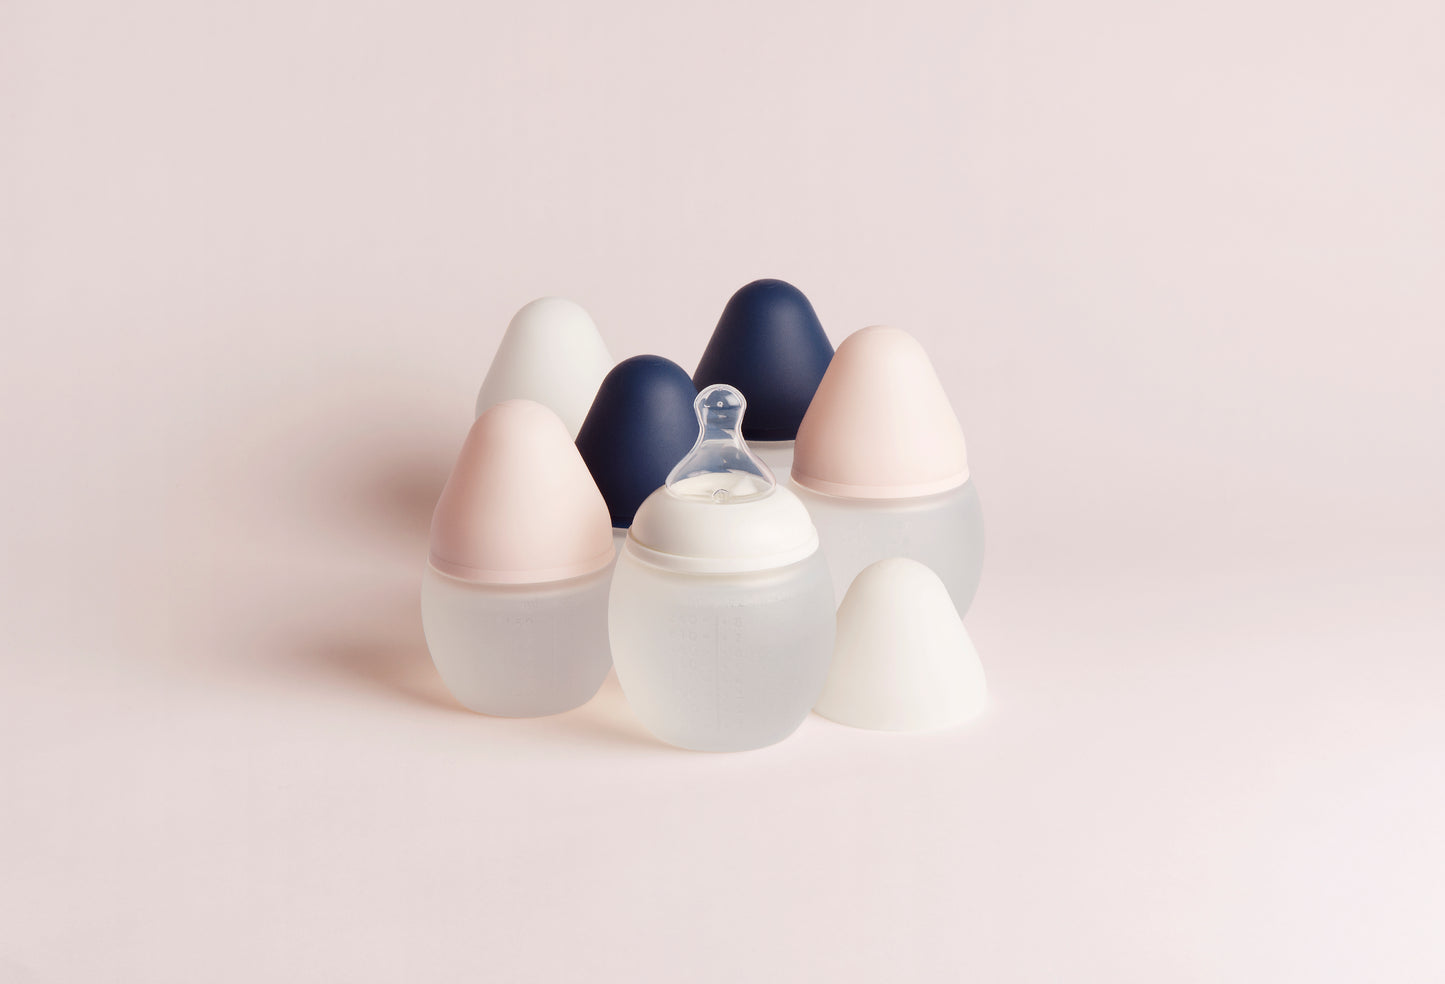 Élhée - Babyflasche | Nude - Leja Concept Store